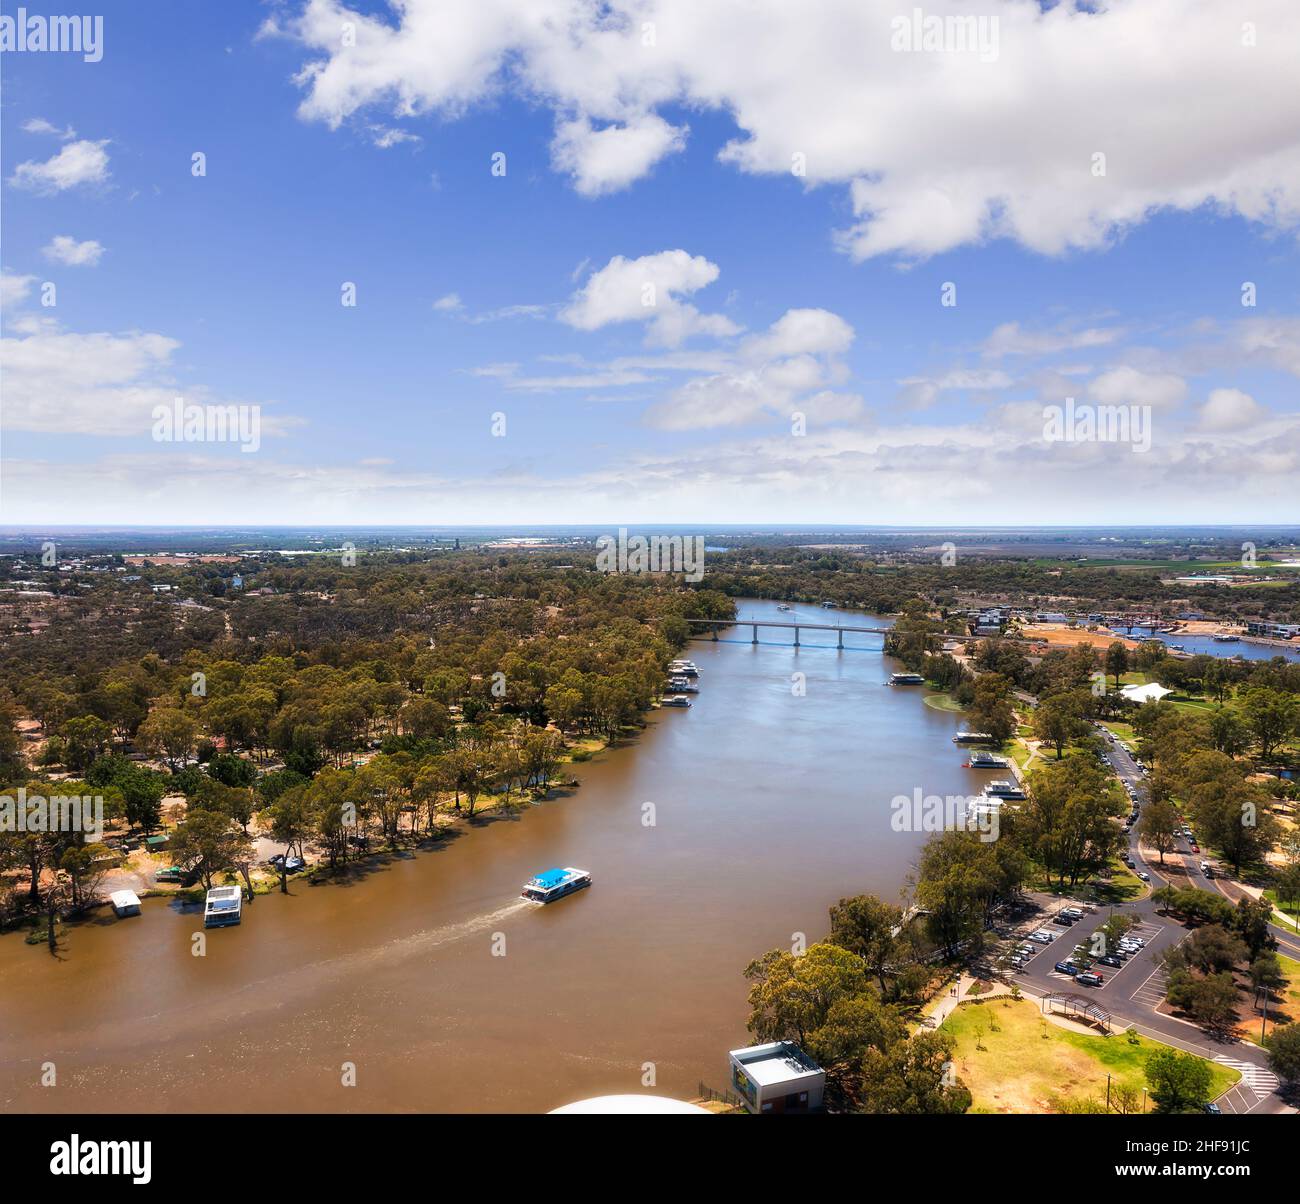 Battello a vapore sul fiume Murray nella città di Mildura in Australia - paesaggio aereo panoramico. Foto Stock